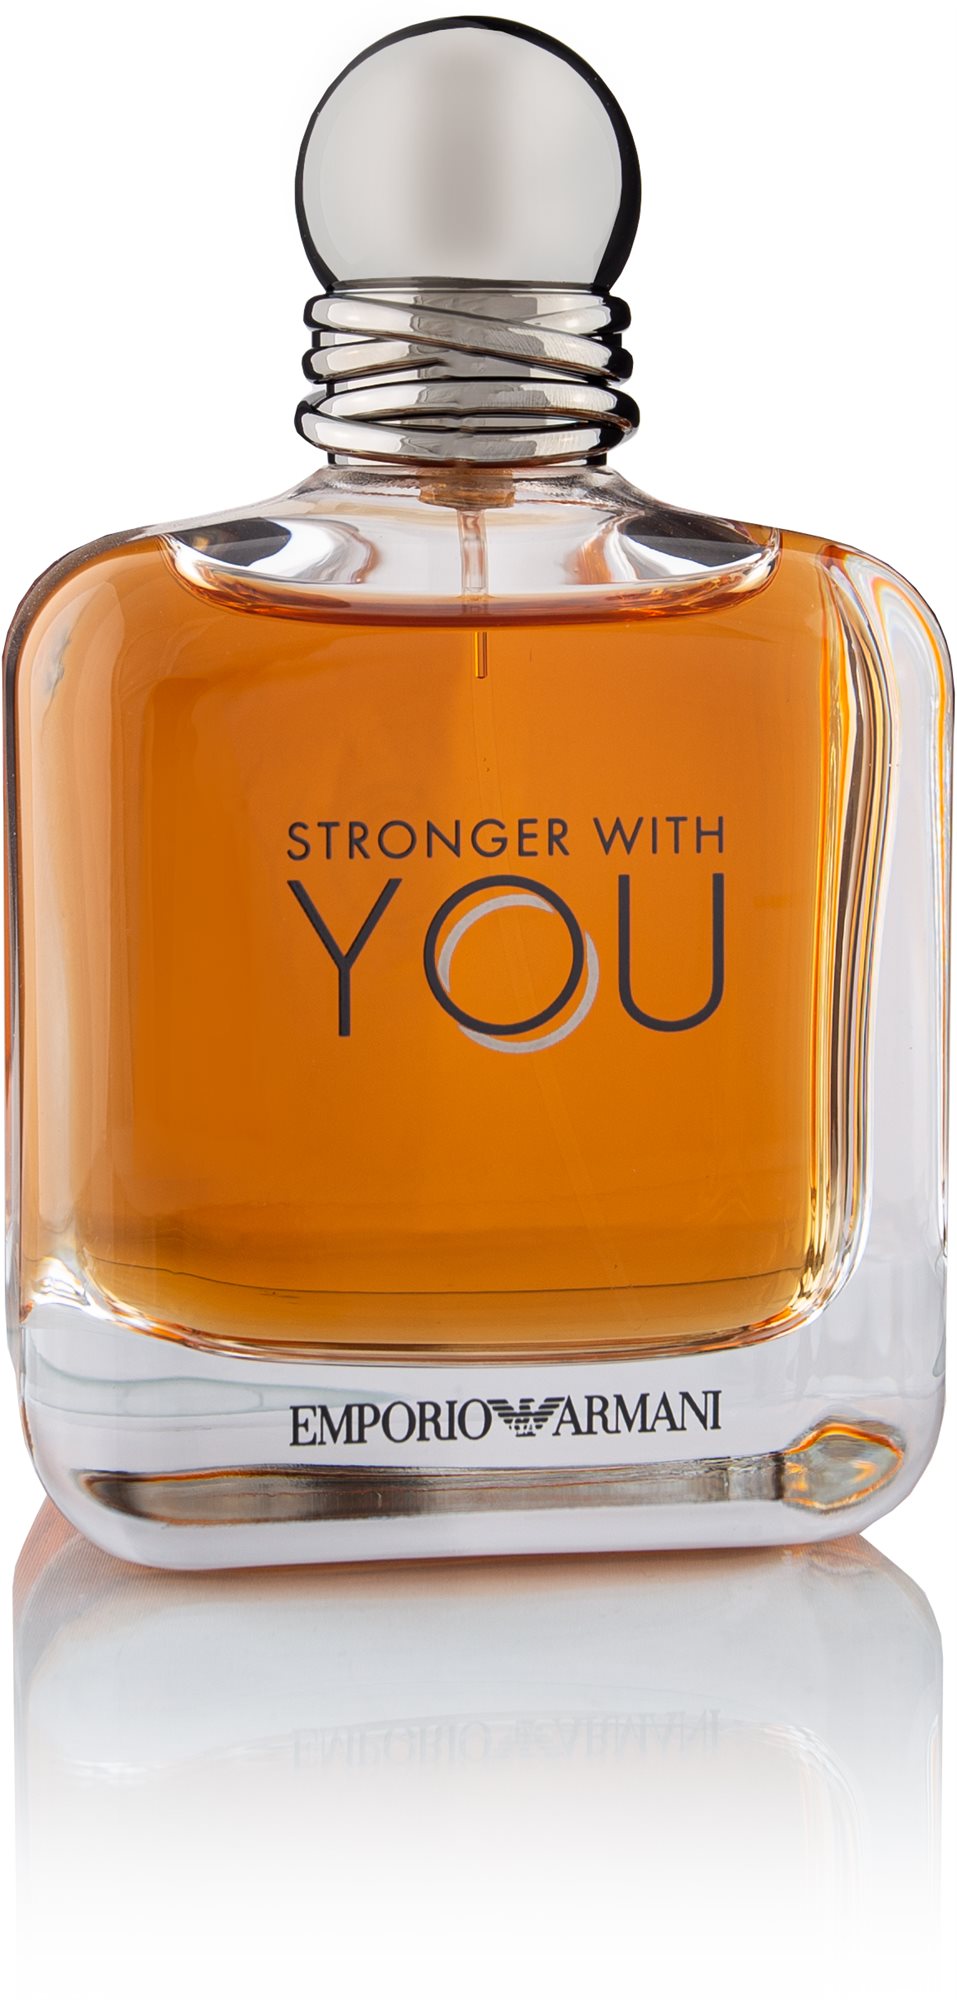 GIORGIO ARMANI Emporio Armani Stronger With You Pour Homme EdT 100 ml